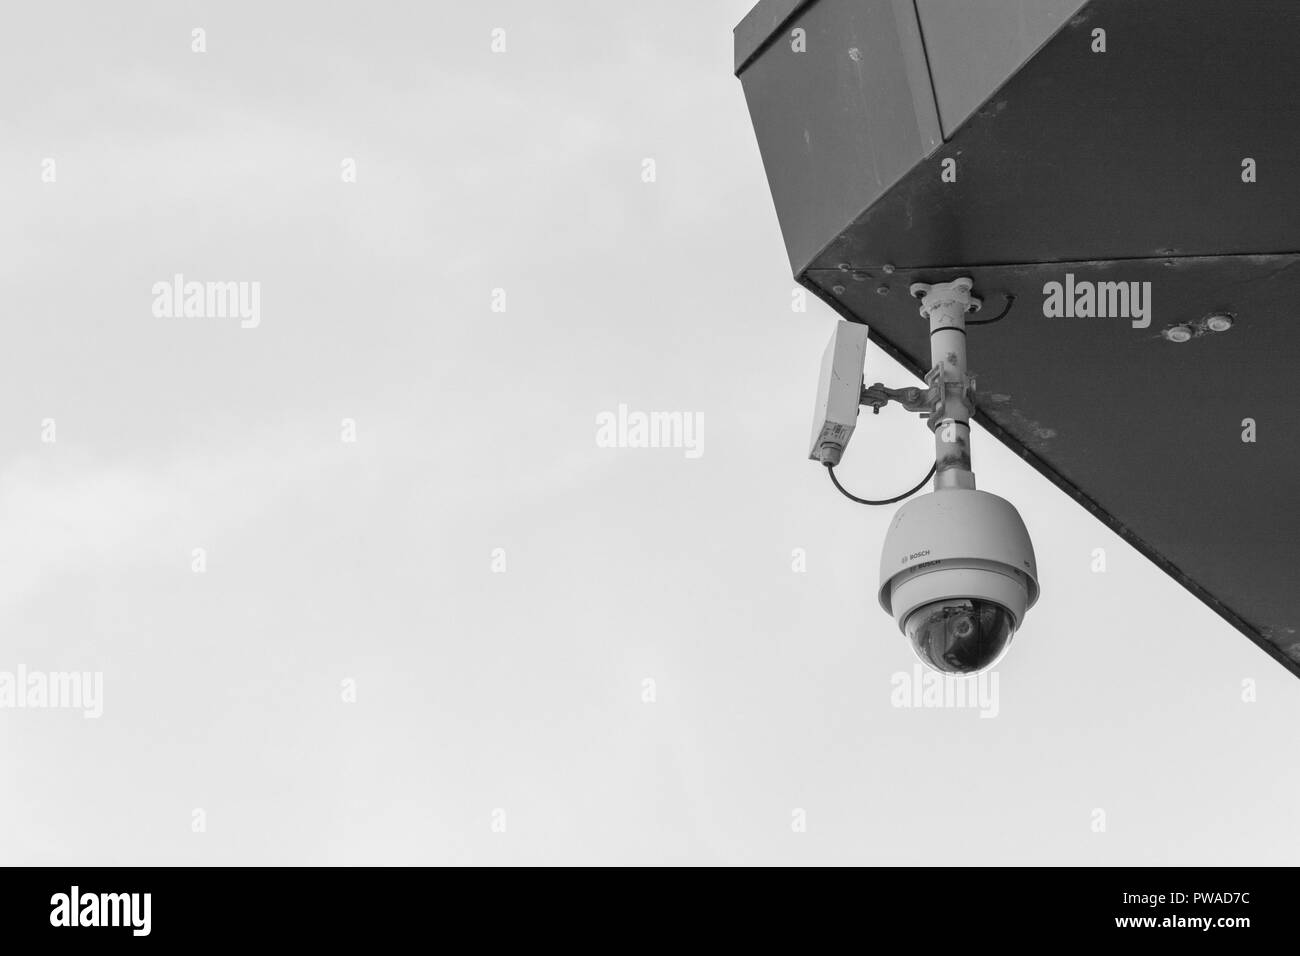 CCTV-Überwachungskamera "Watching Over You". Kriminalprävention Metapher, Überwachungsstaat, Sicherheitssystem, Gesichtserkennung Konzept. Stockfoto